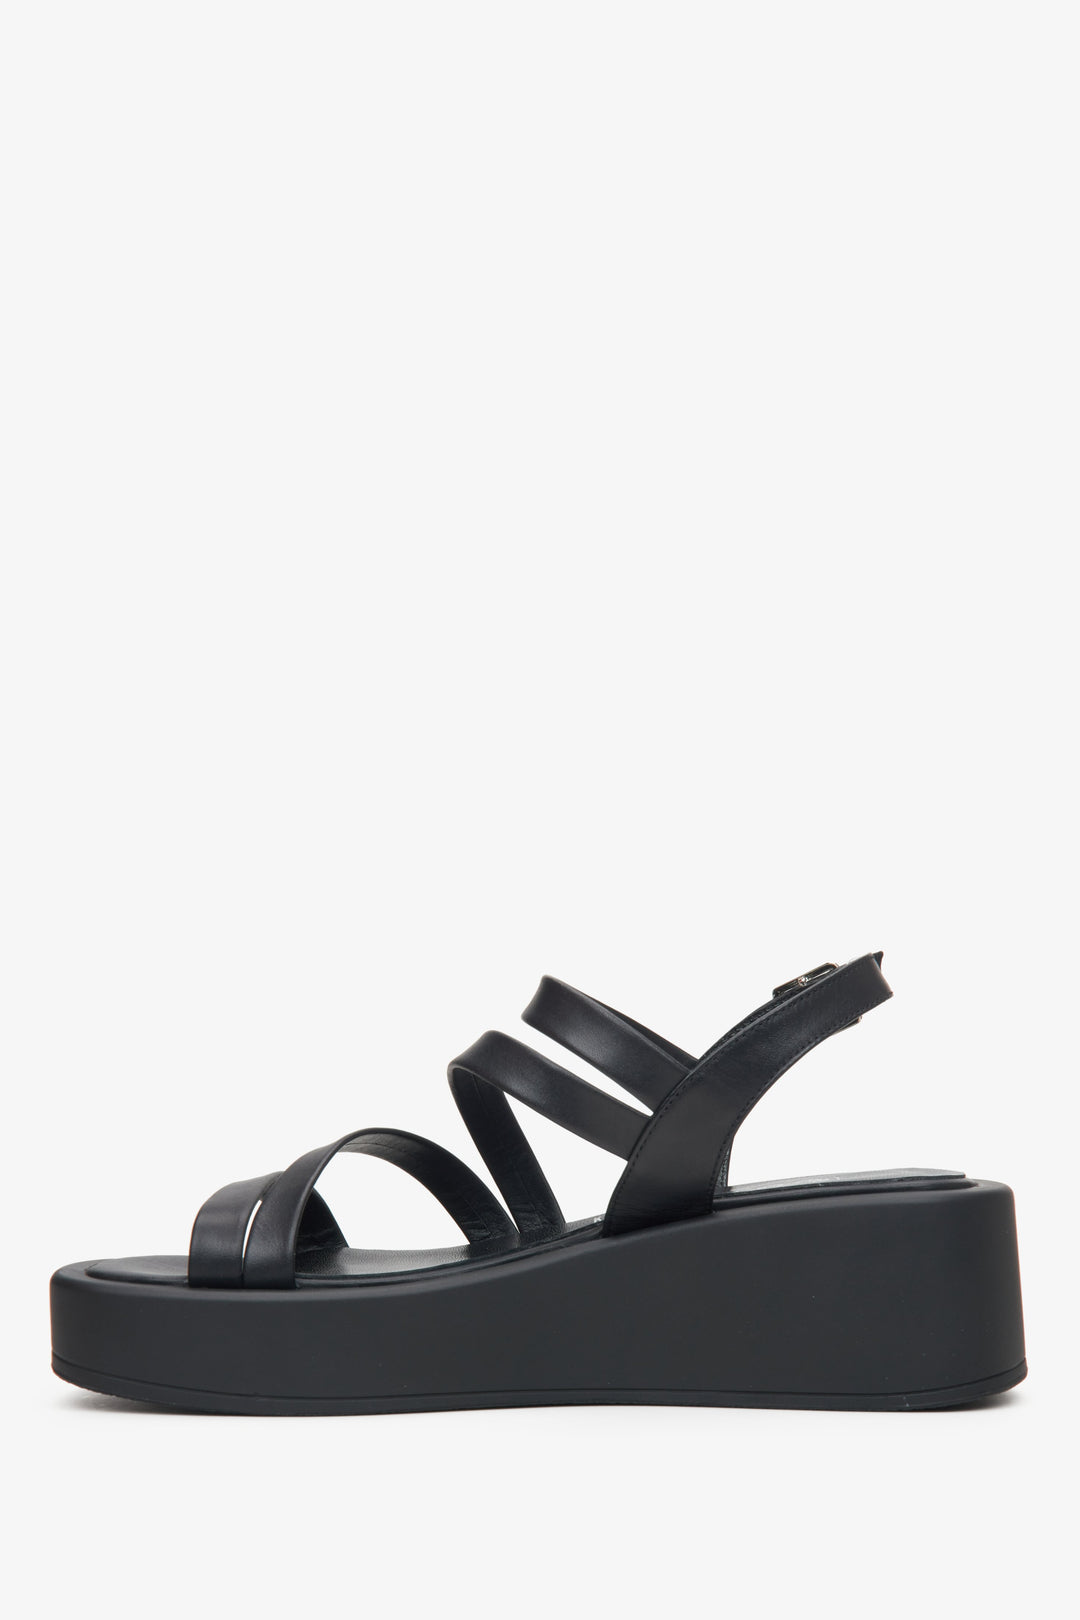 Skórzane czarne sandały damskie na koturnie Estro - profil buta.